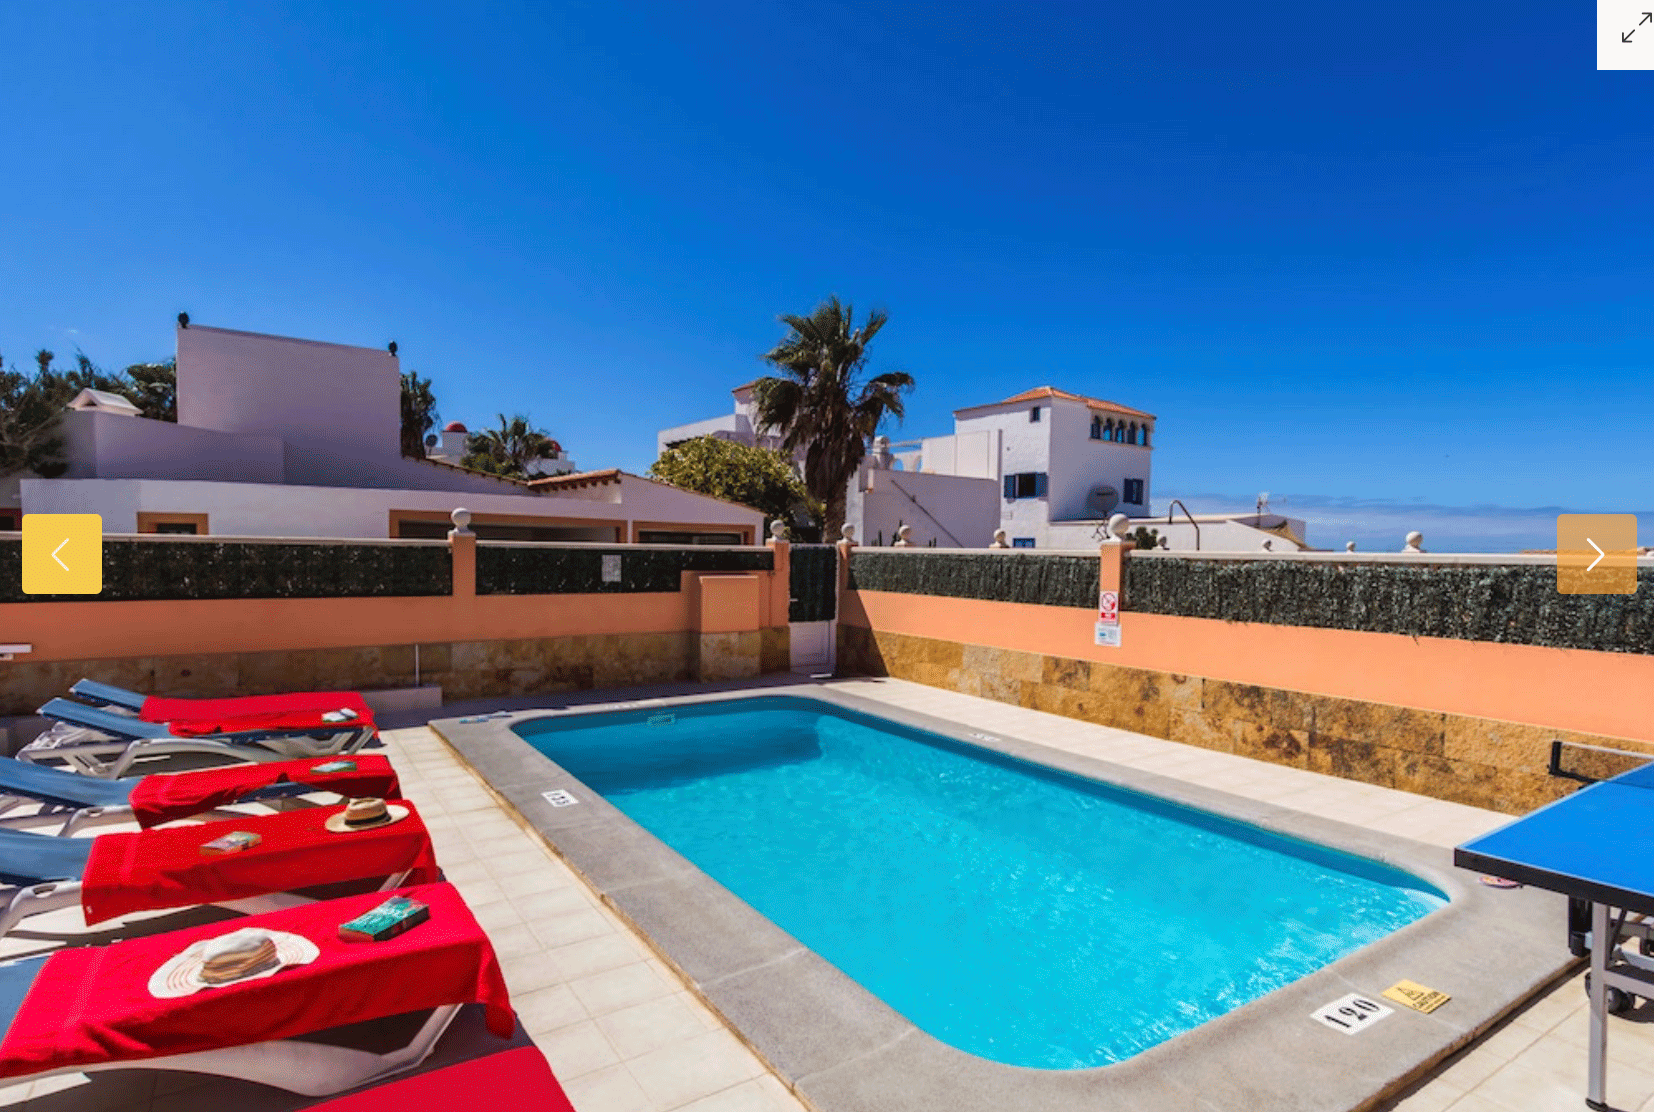 Eine phantastische Villa mit Pool neben dem Meer wir in Corralejo verkauft